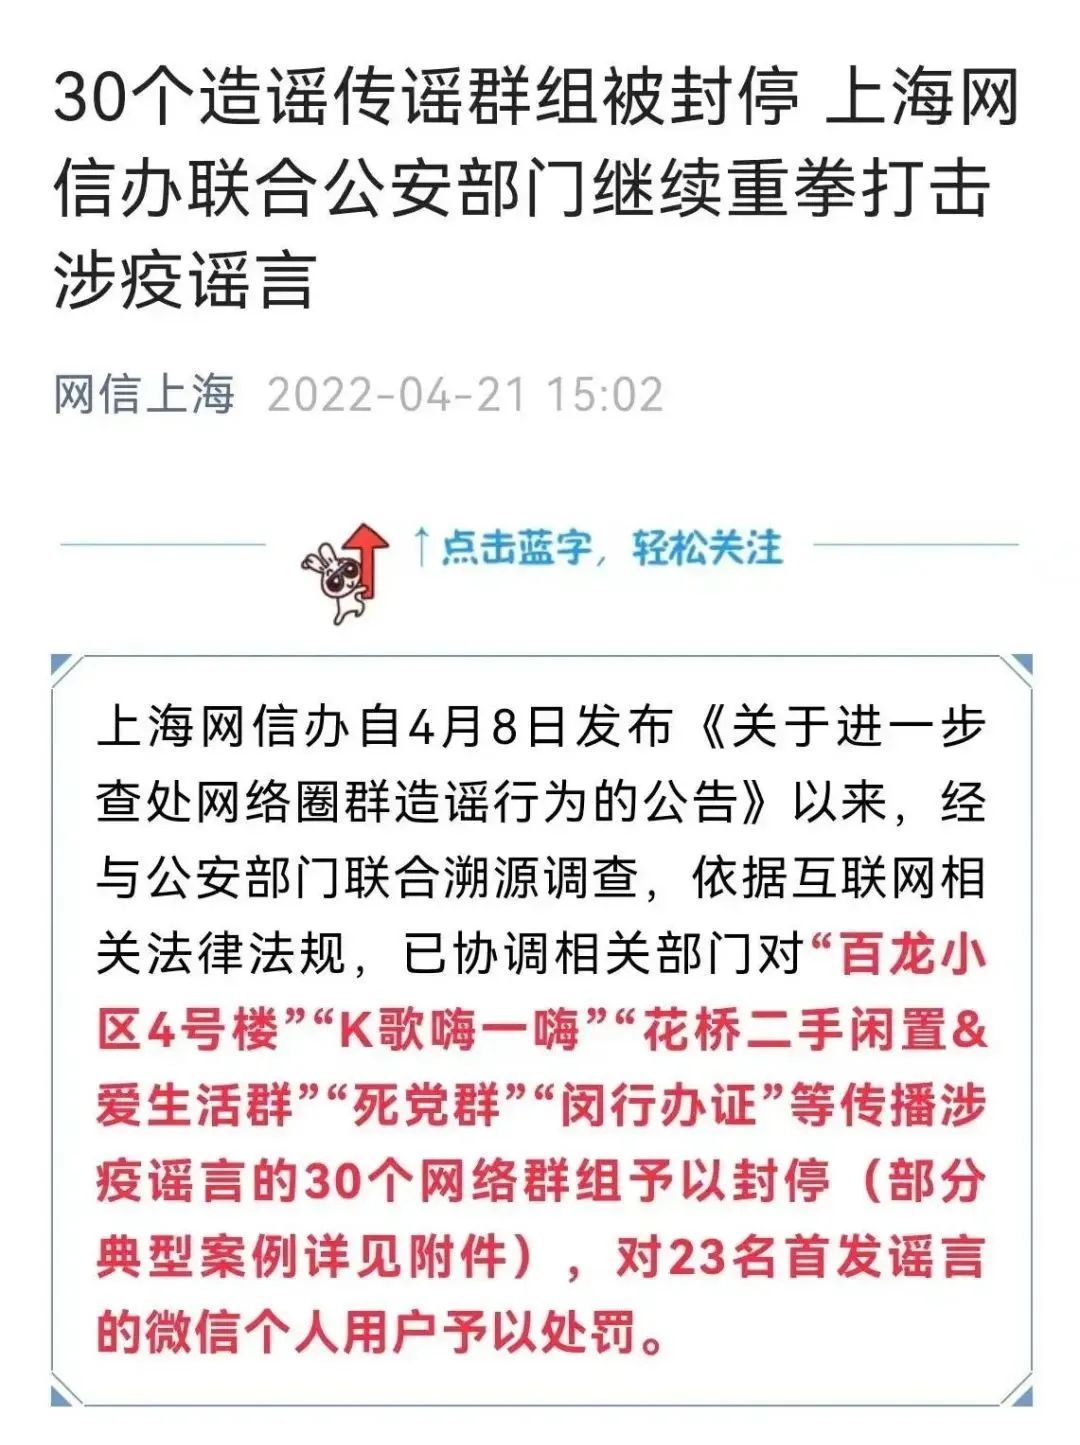 上海网信办联合公安部门重拳打击涉疫谣言